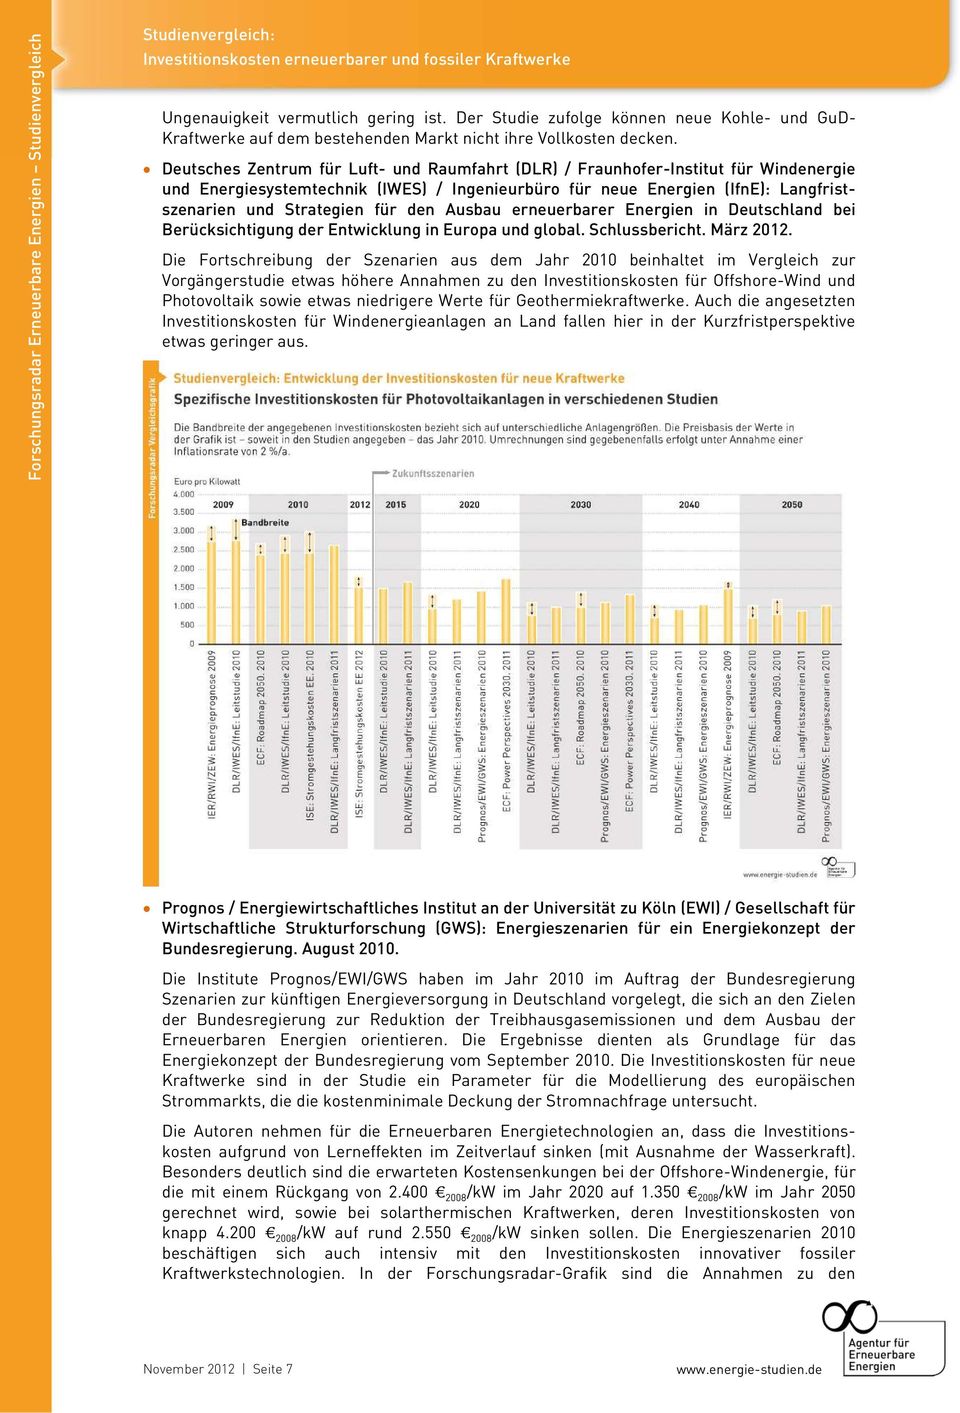 den Ausbau erneuerbarer Energien in Deutschland bei Berücksichtigung der Entwicklung in Europa und global. Schlussbericht. März 2012.